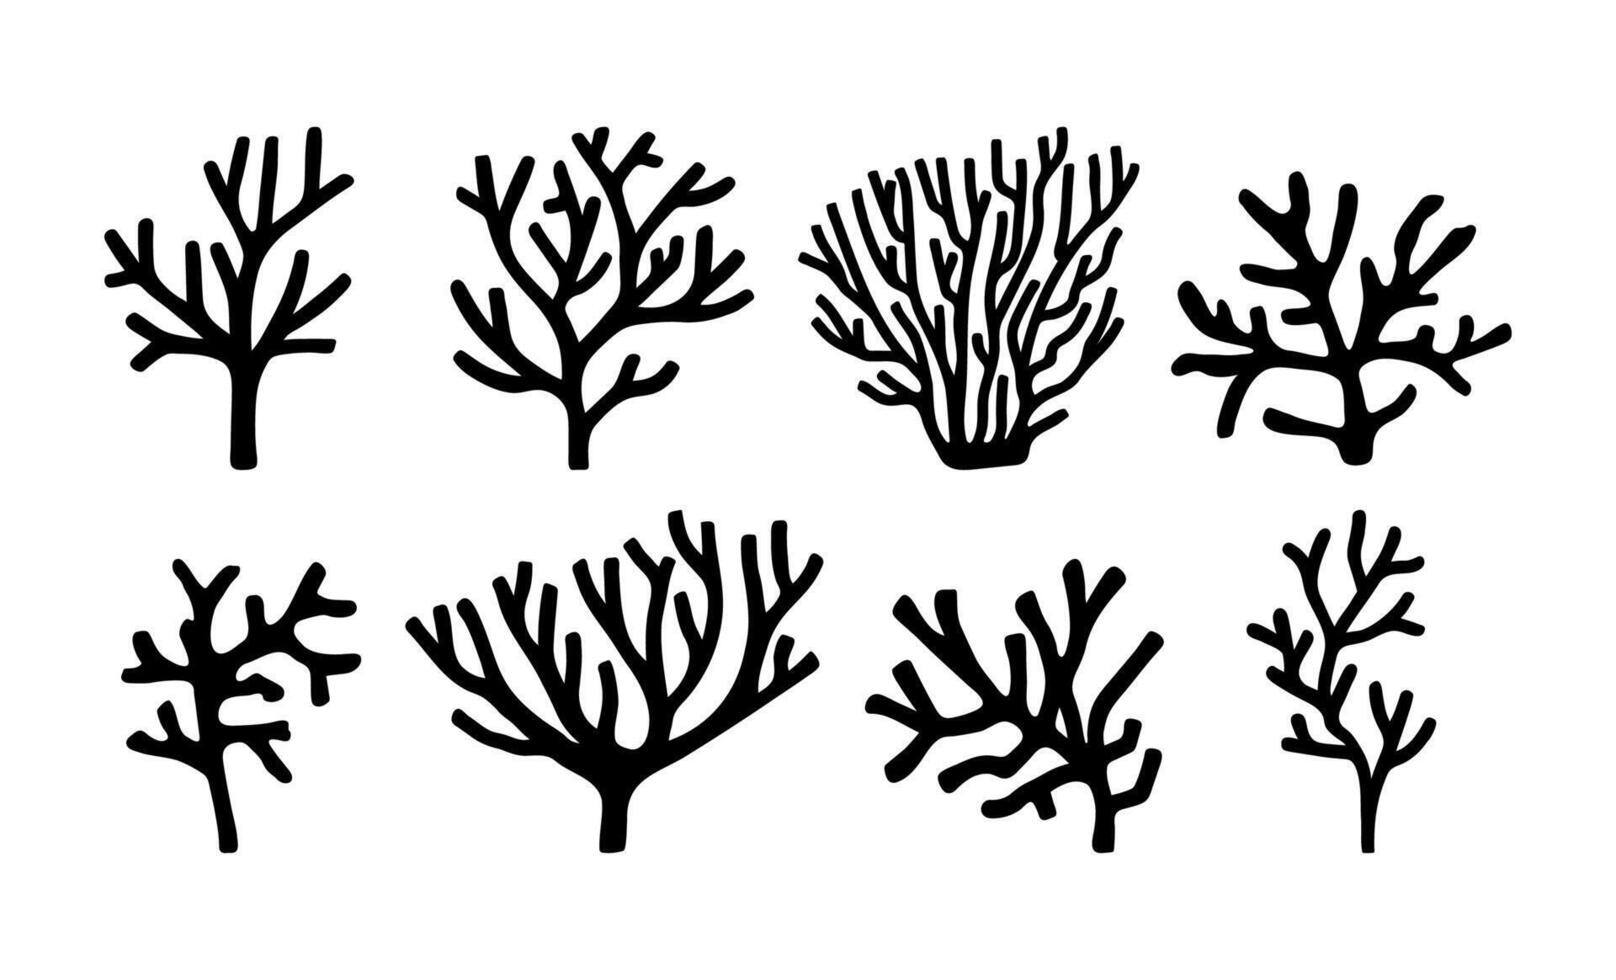 Vektor Meer Sammlung Korallen. Hand gezeichnet Gekritzel Illustrationen.